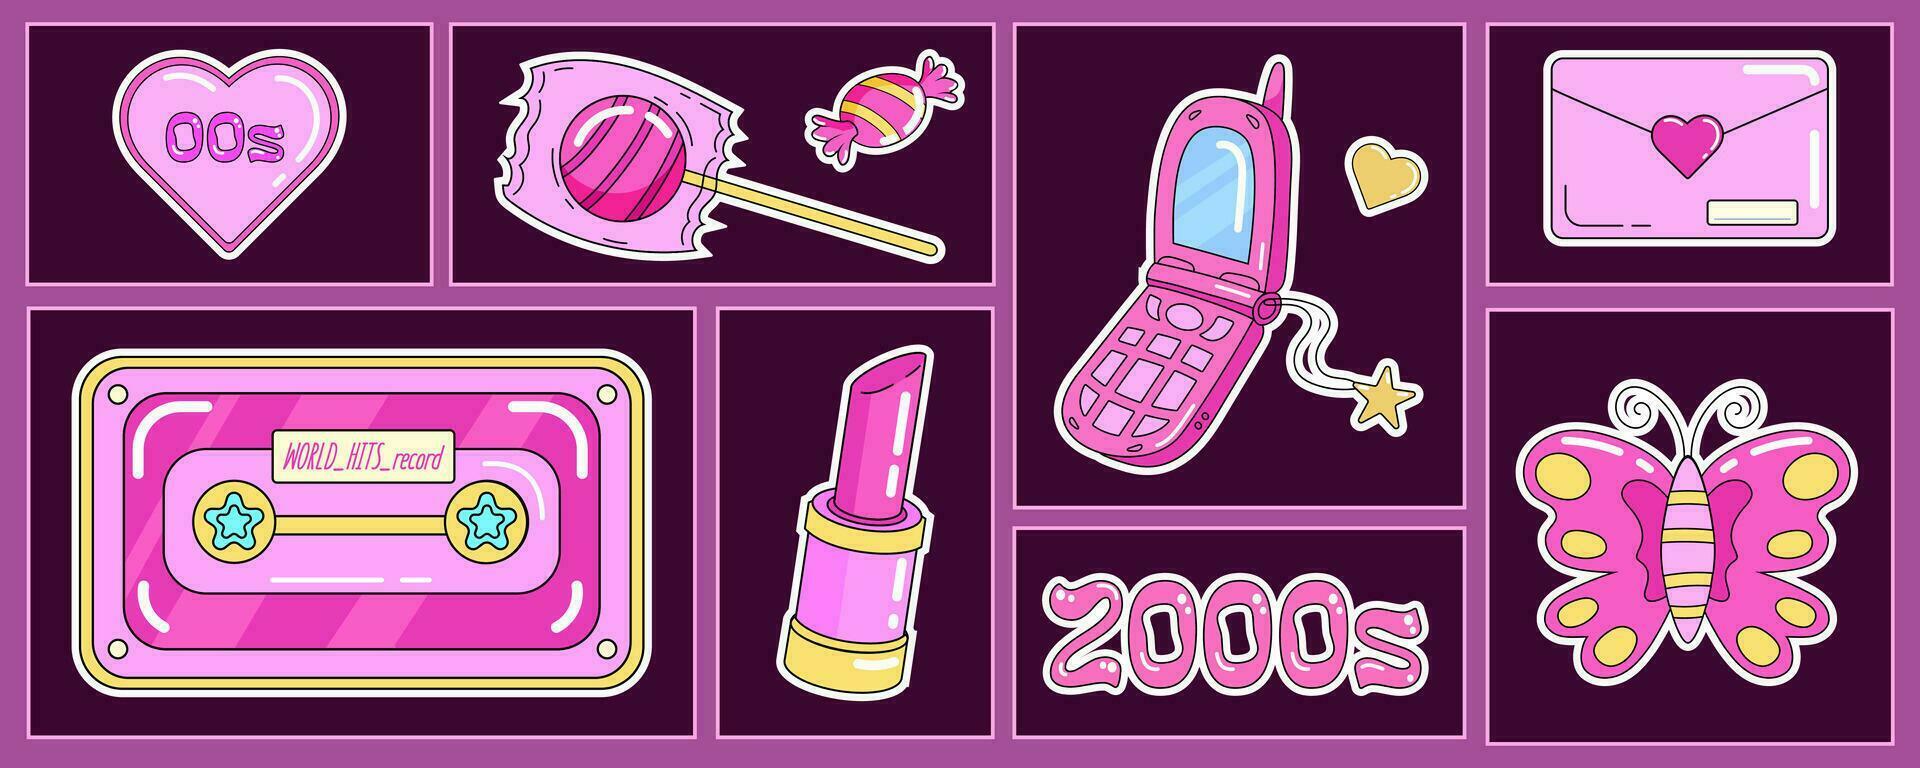 branché y2k groupe de nostalgique rétro objets, années 2000 mobile téléphone, l'audio cassette, sucré et sucette, rouge à lèvres, cœurs et papillon. vecteur